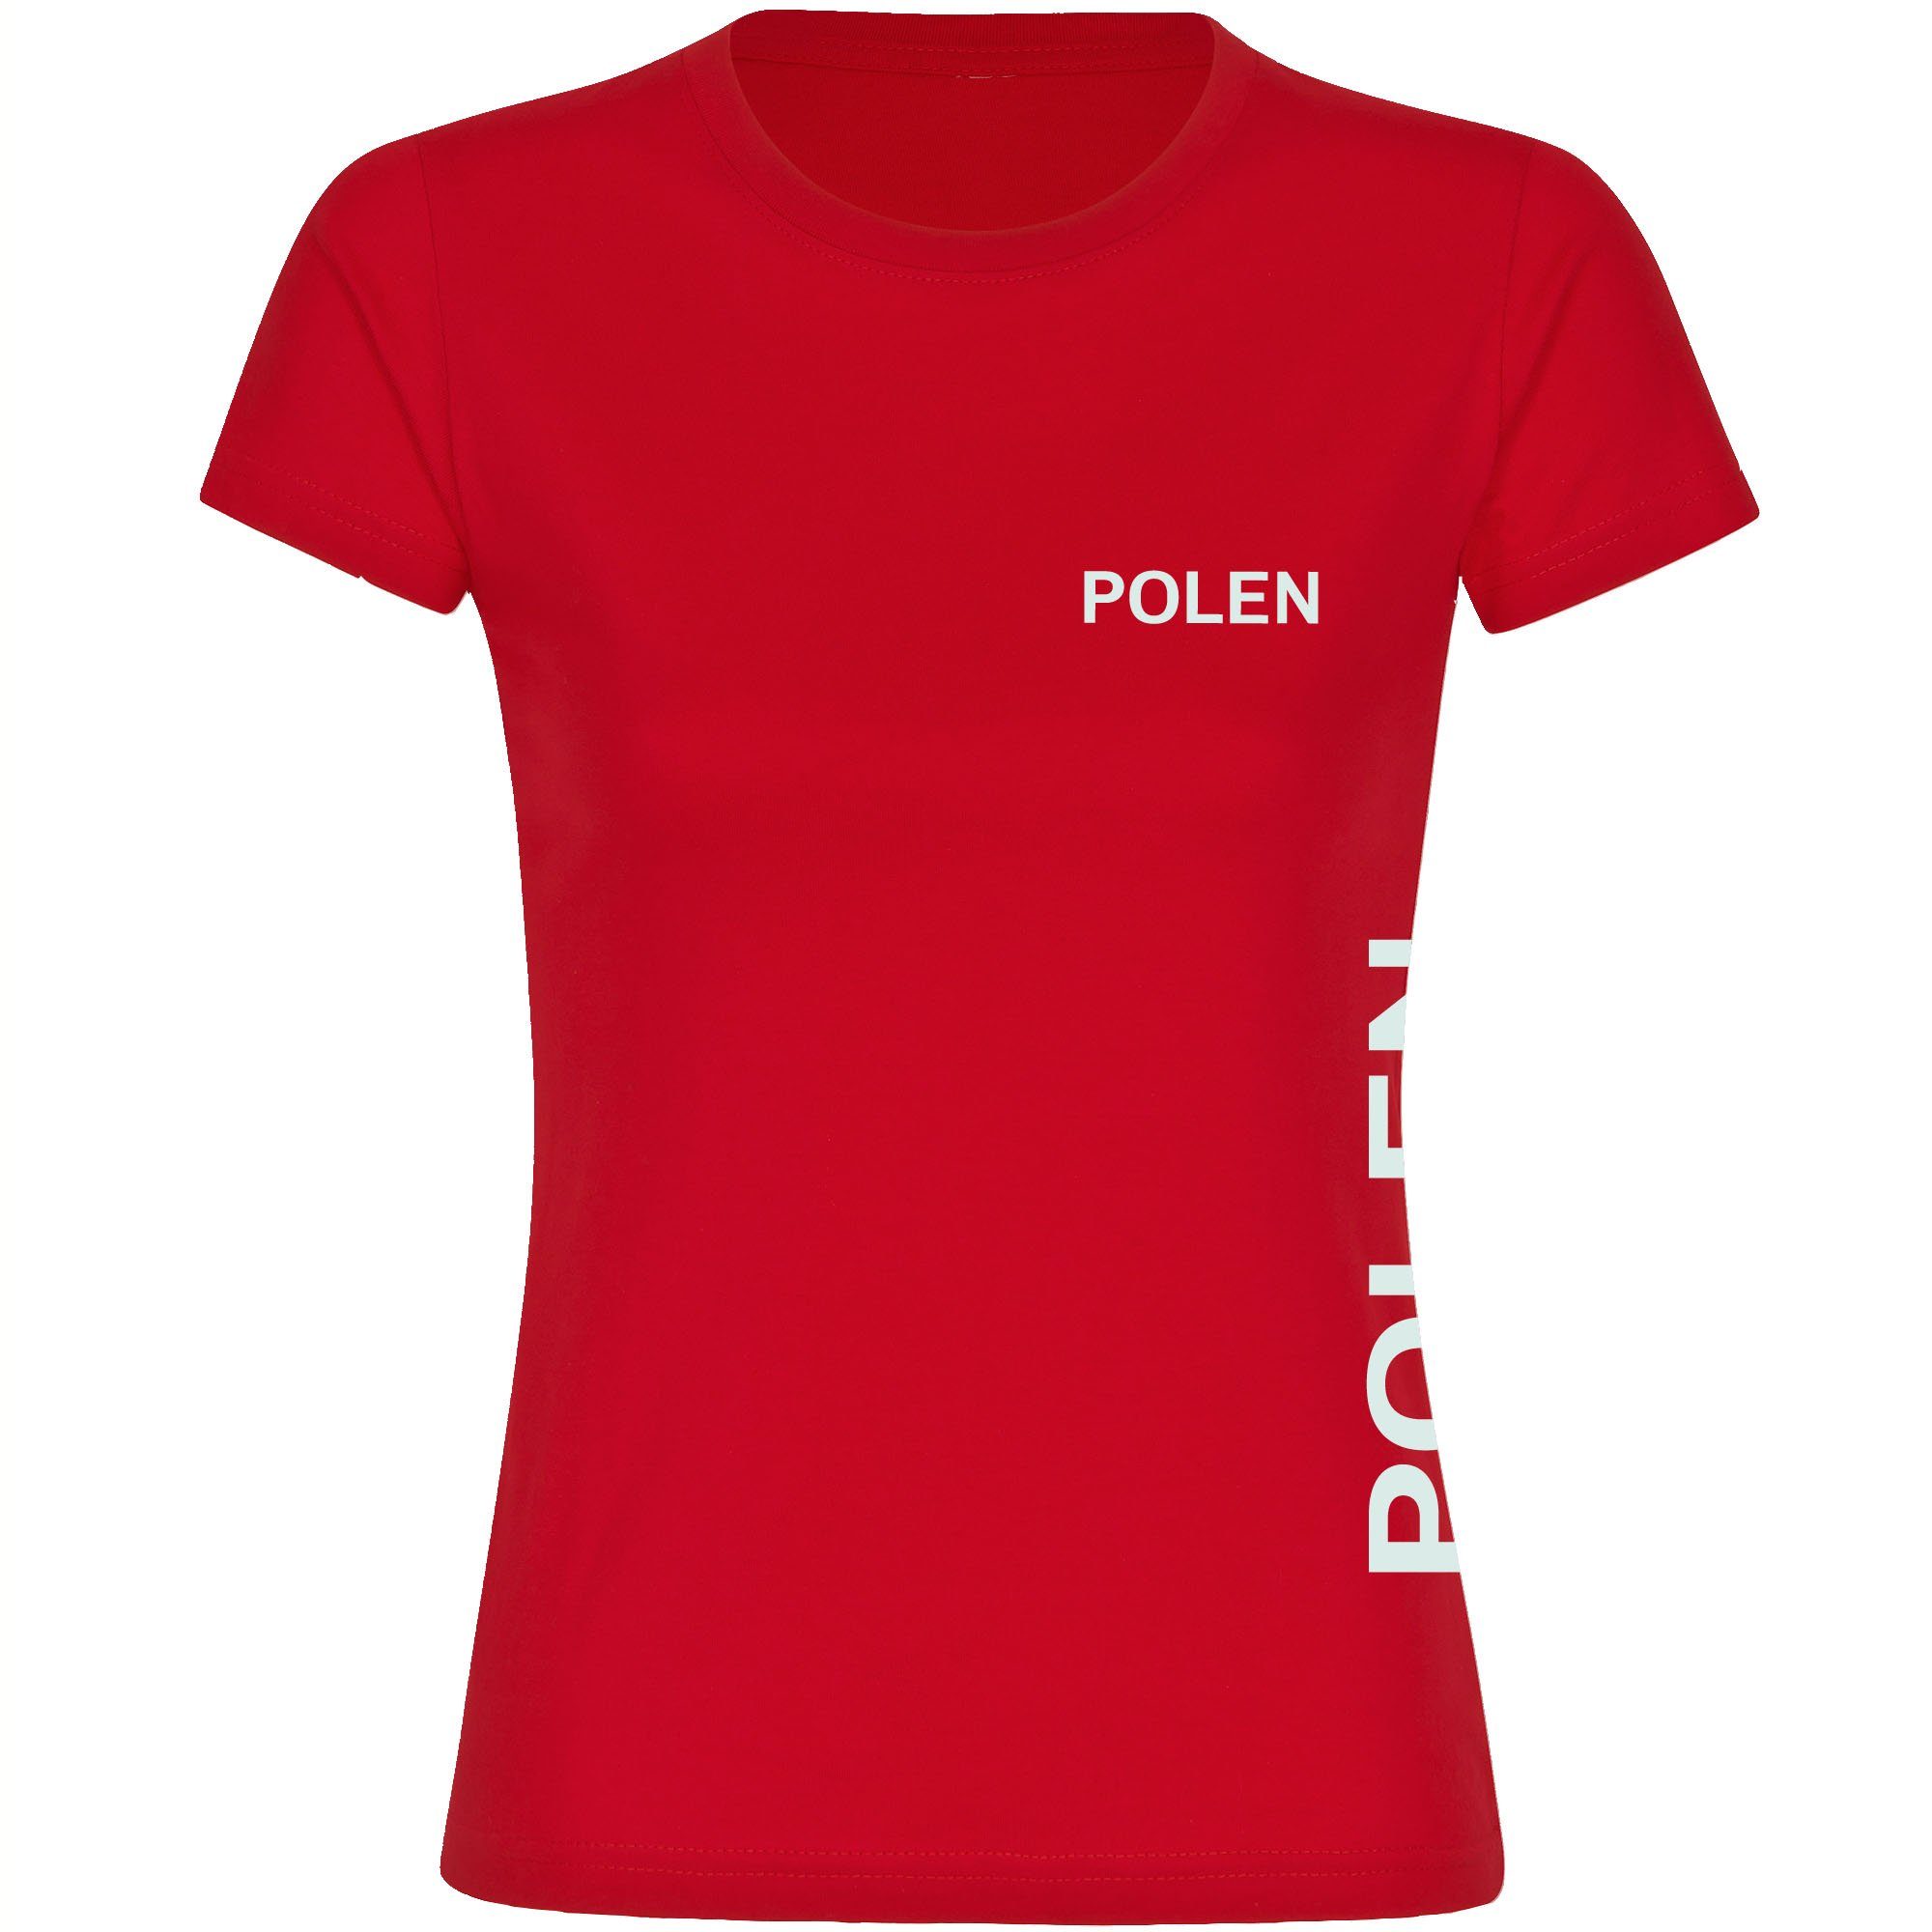 multifanshop T-Shirt Damen Polen - Brust & Seite - Frauen